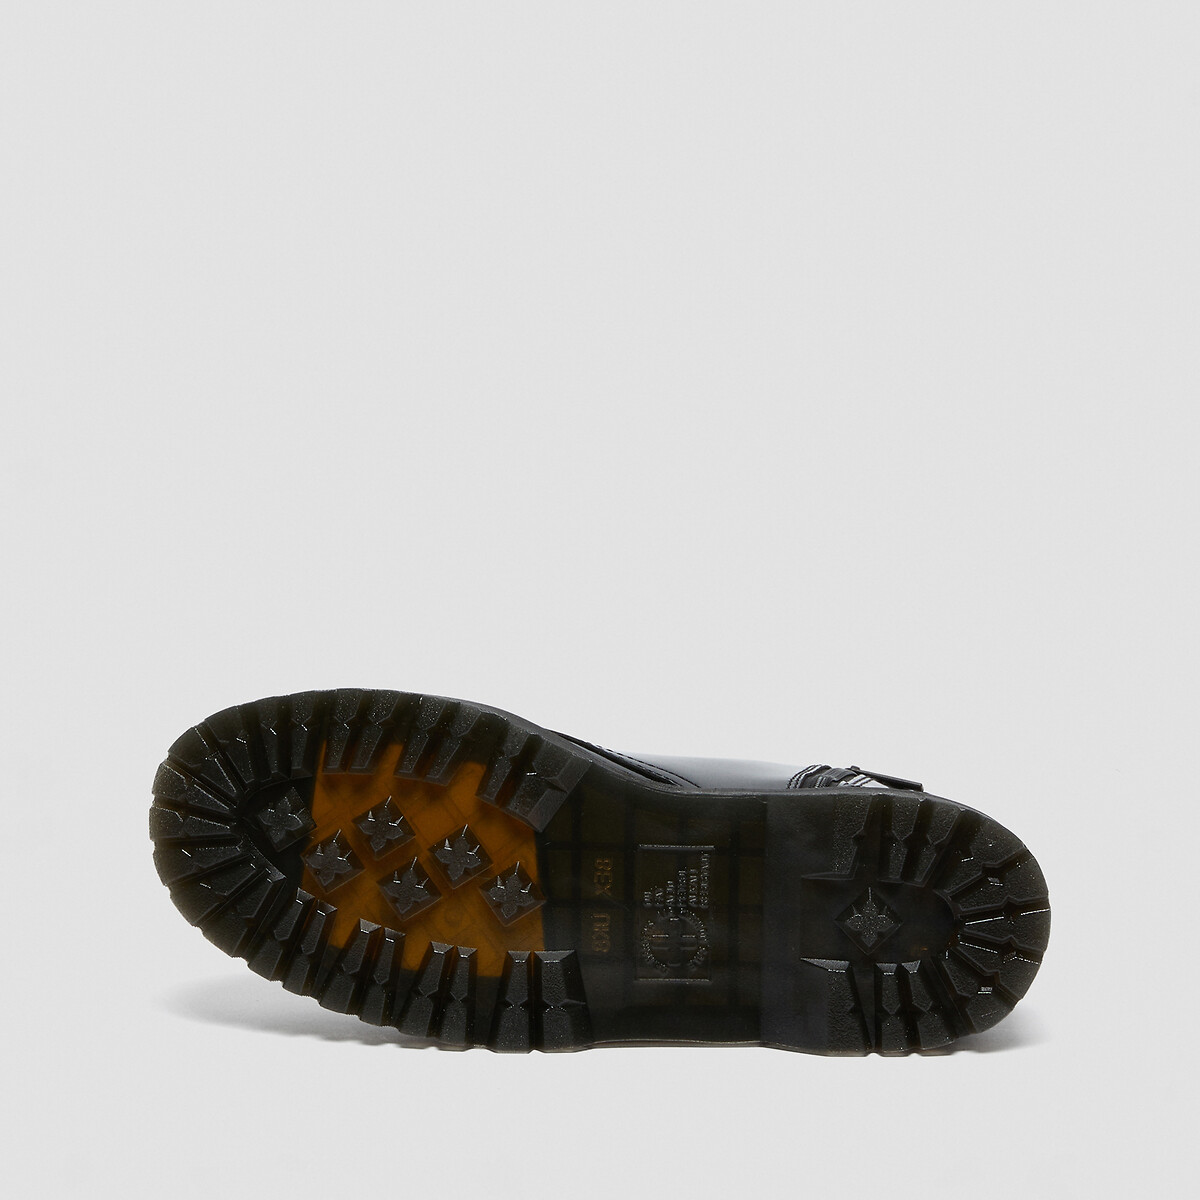 Botas de charol con plataforma jadon patent Martens | La Redoute